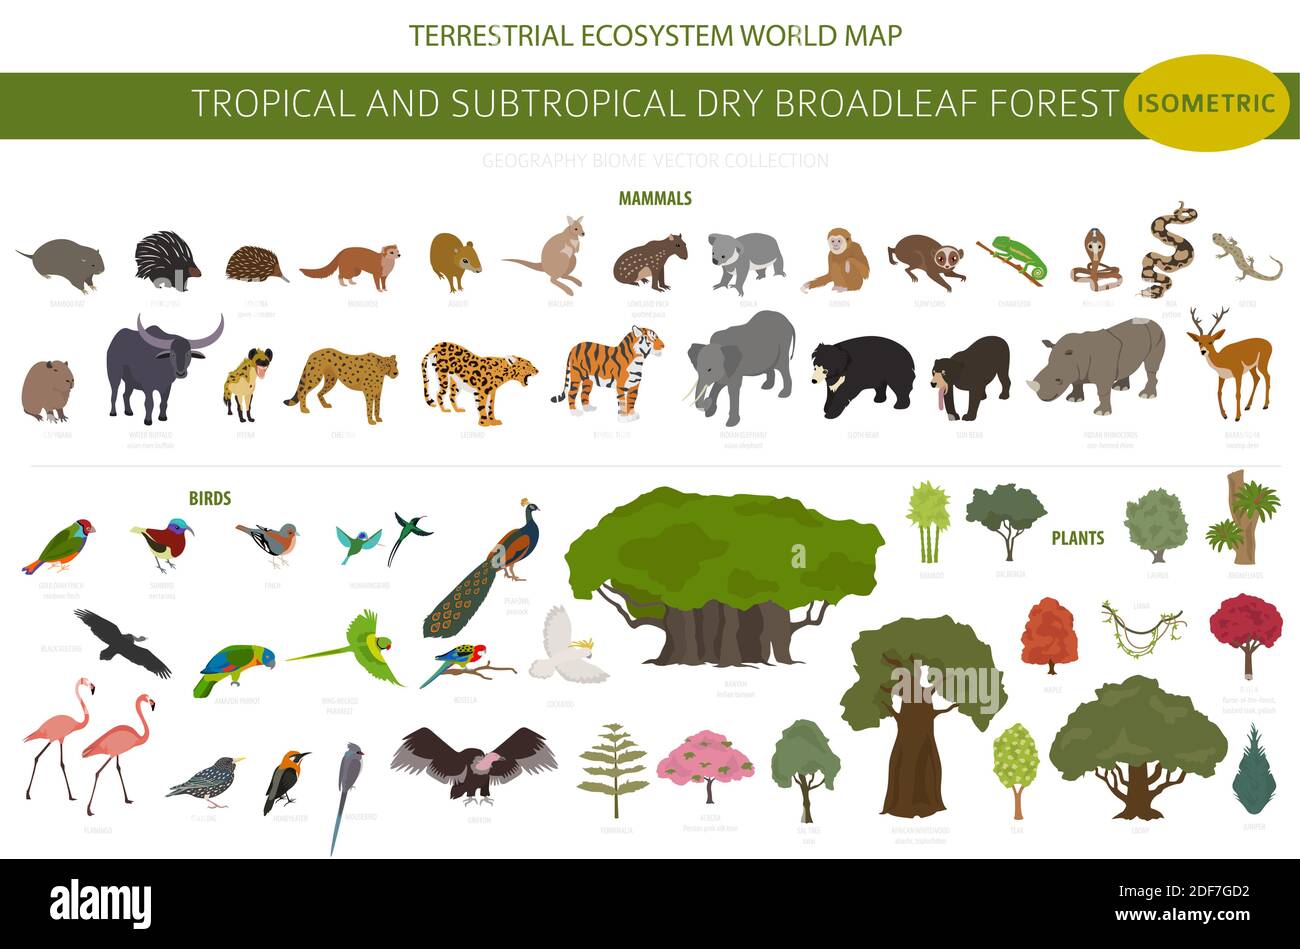 Biome forestier tropical et subtropical à feuilles larges, infographie sur la région naturelle. Forêts saisonnières. Écosystème des animaux, des oiseaux et des végétations isométrique Illustration de Vecteur